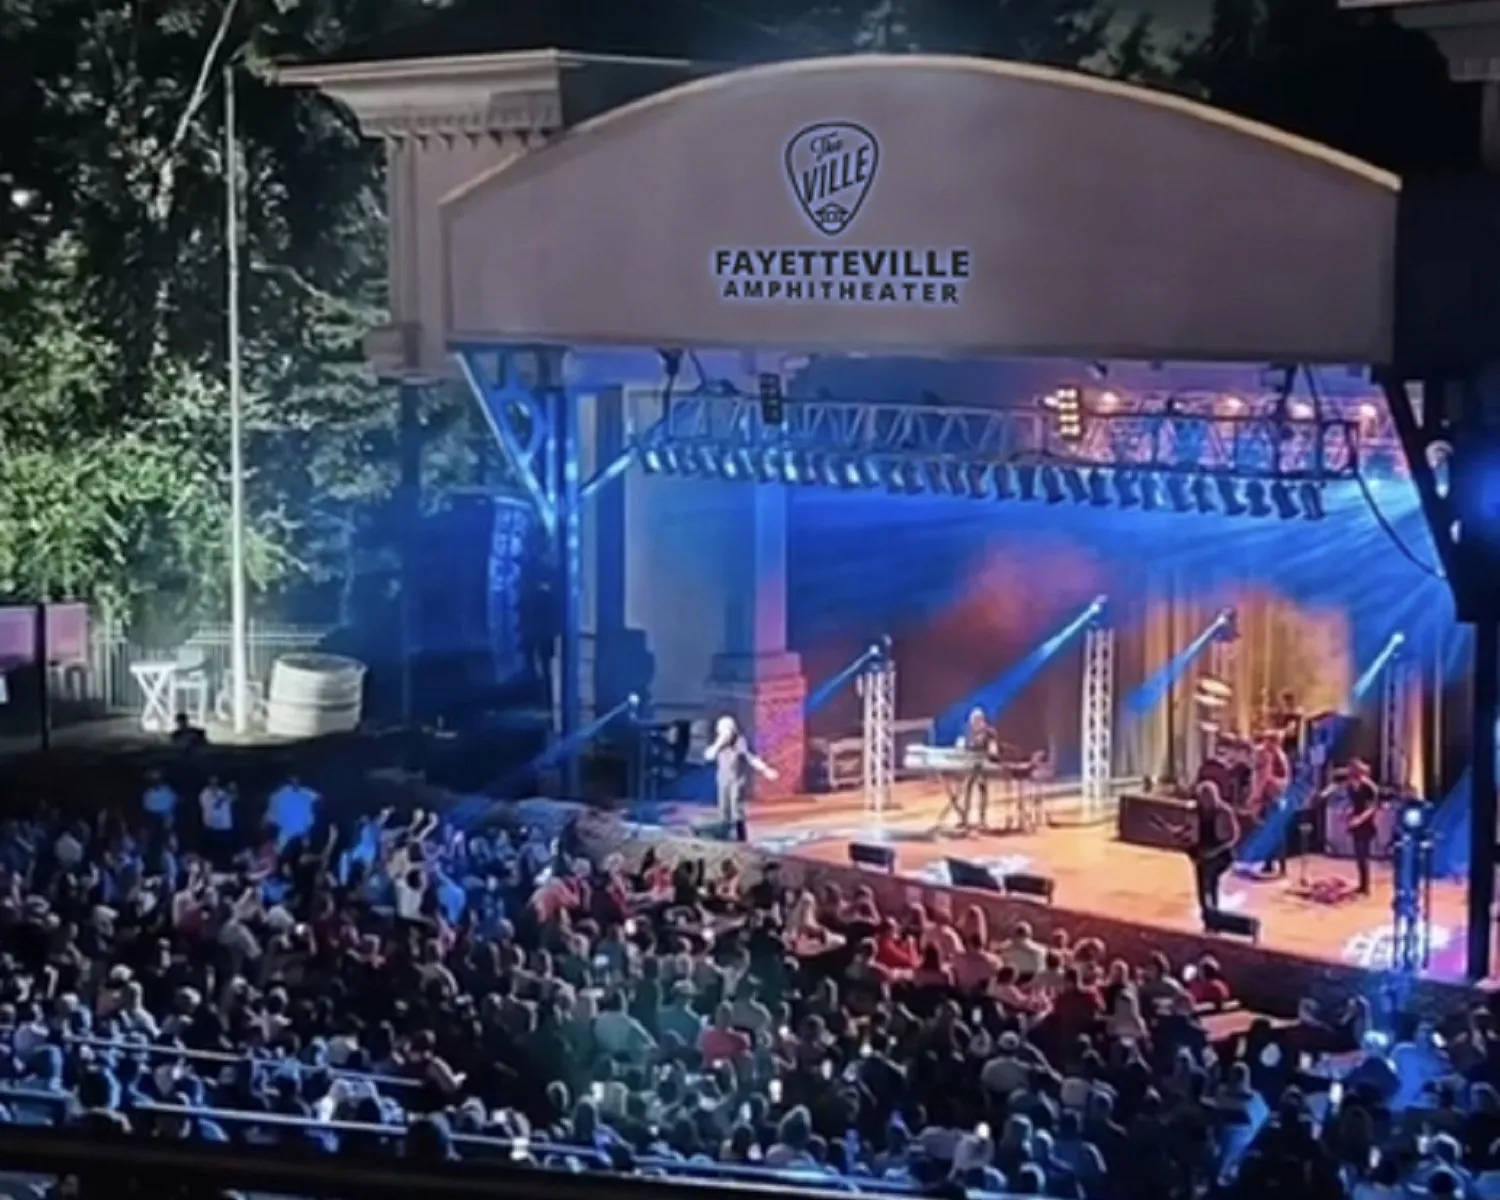 Fayetteville Amphitheater